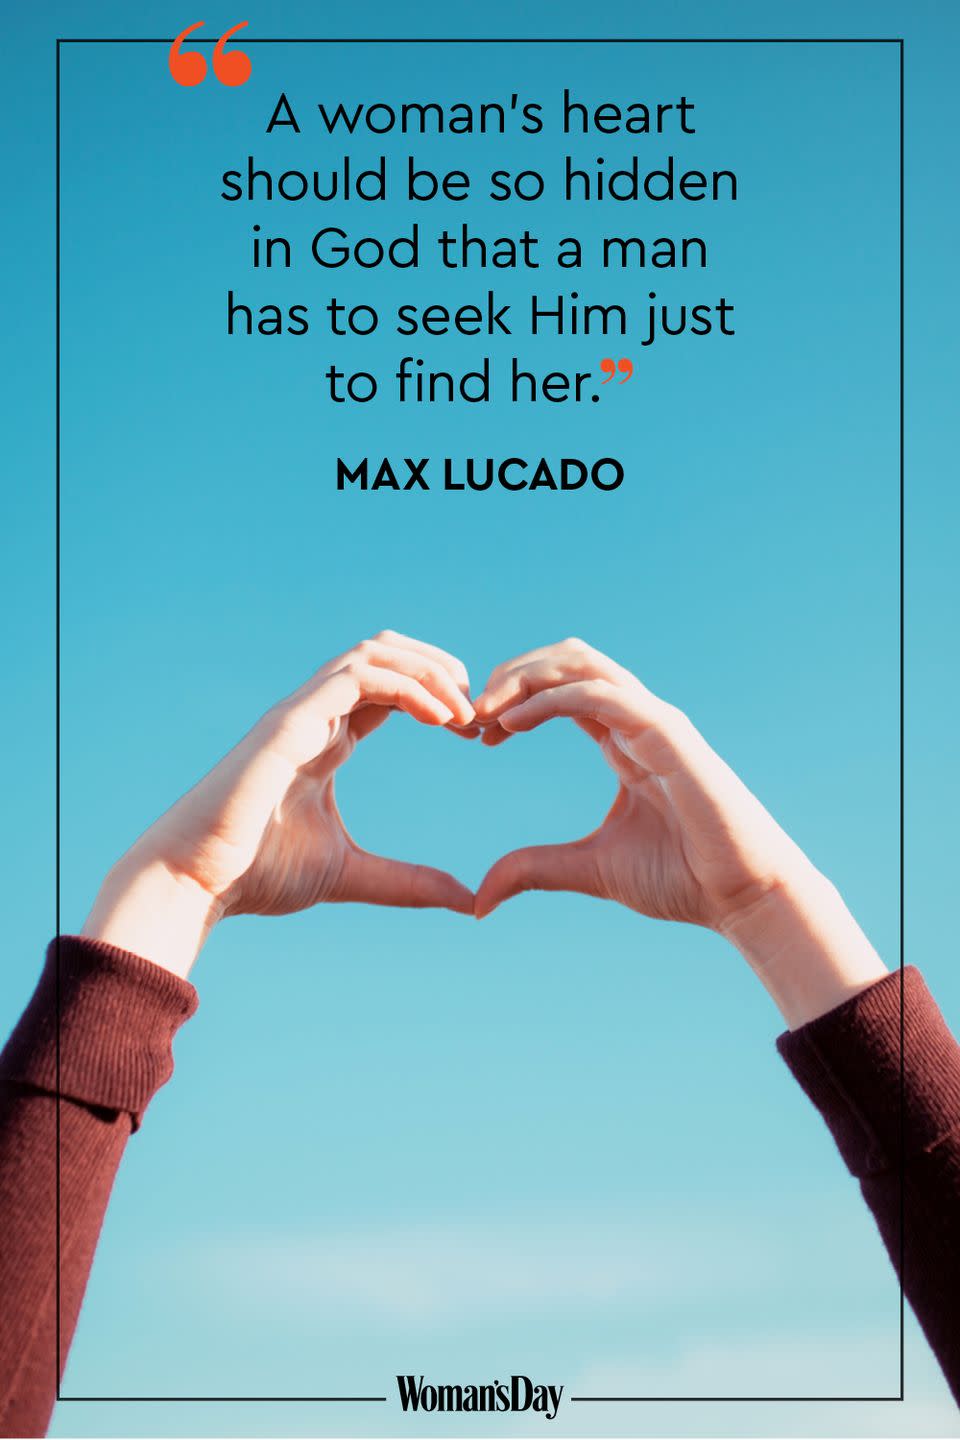 Max Lucado